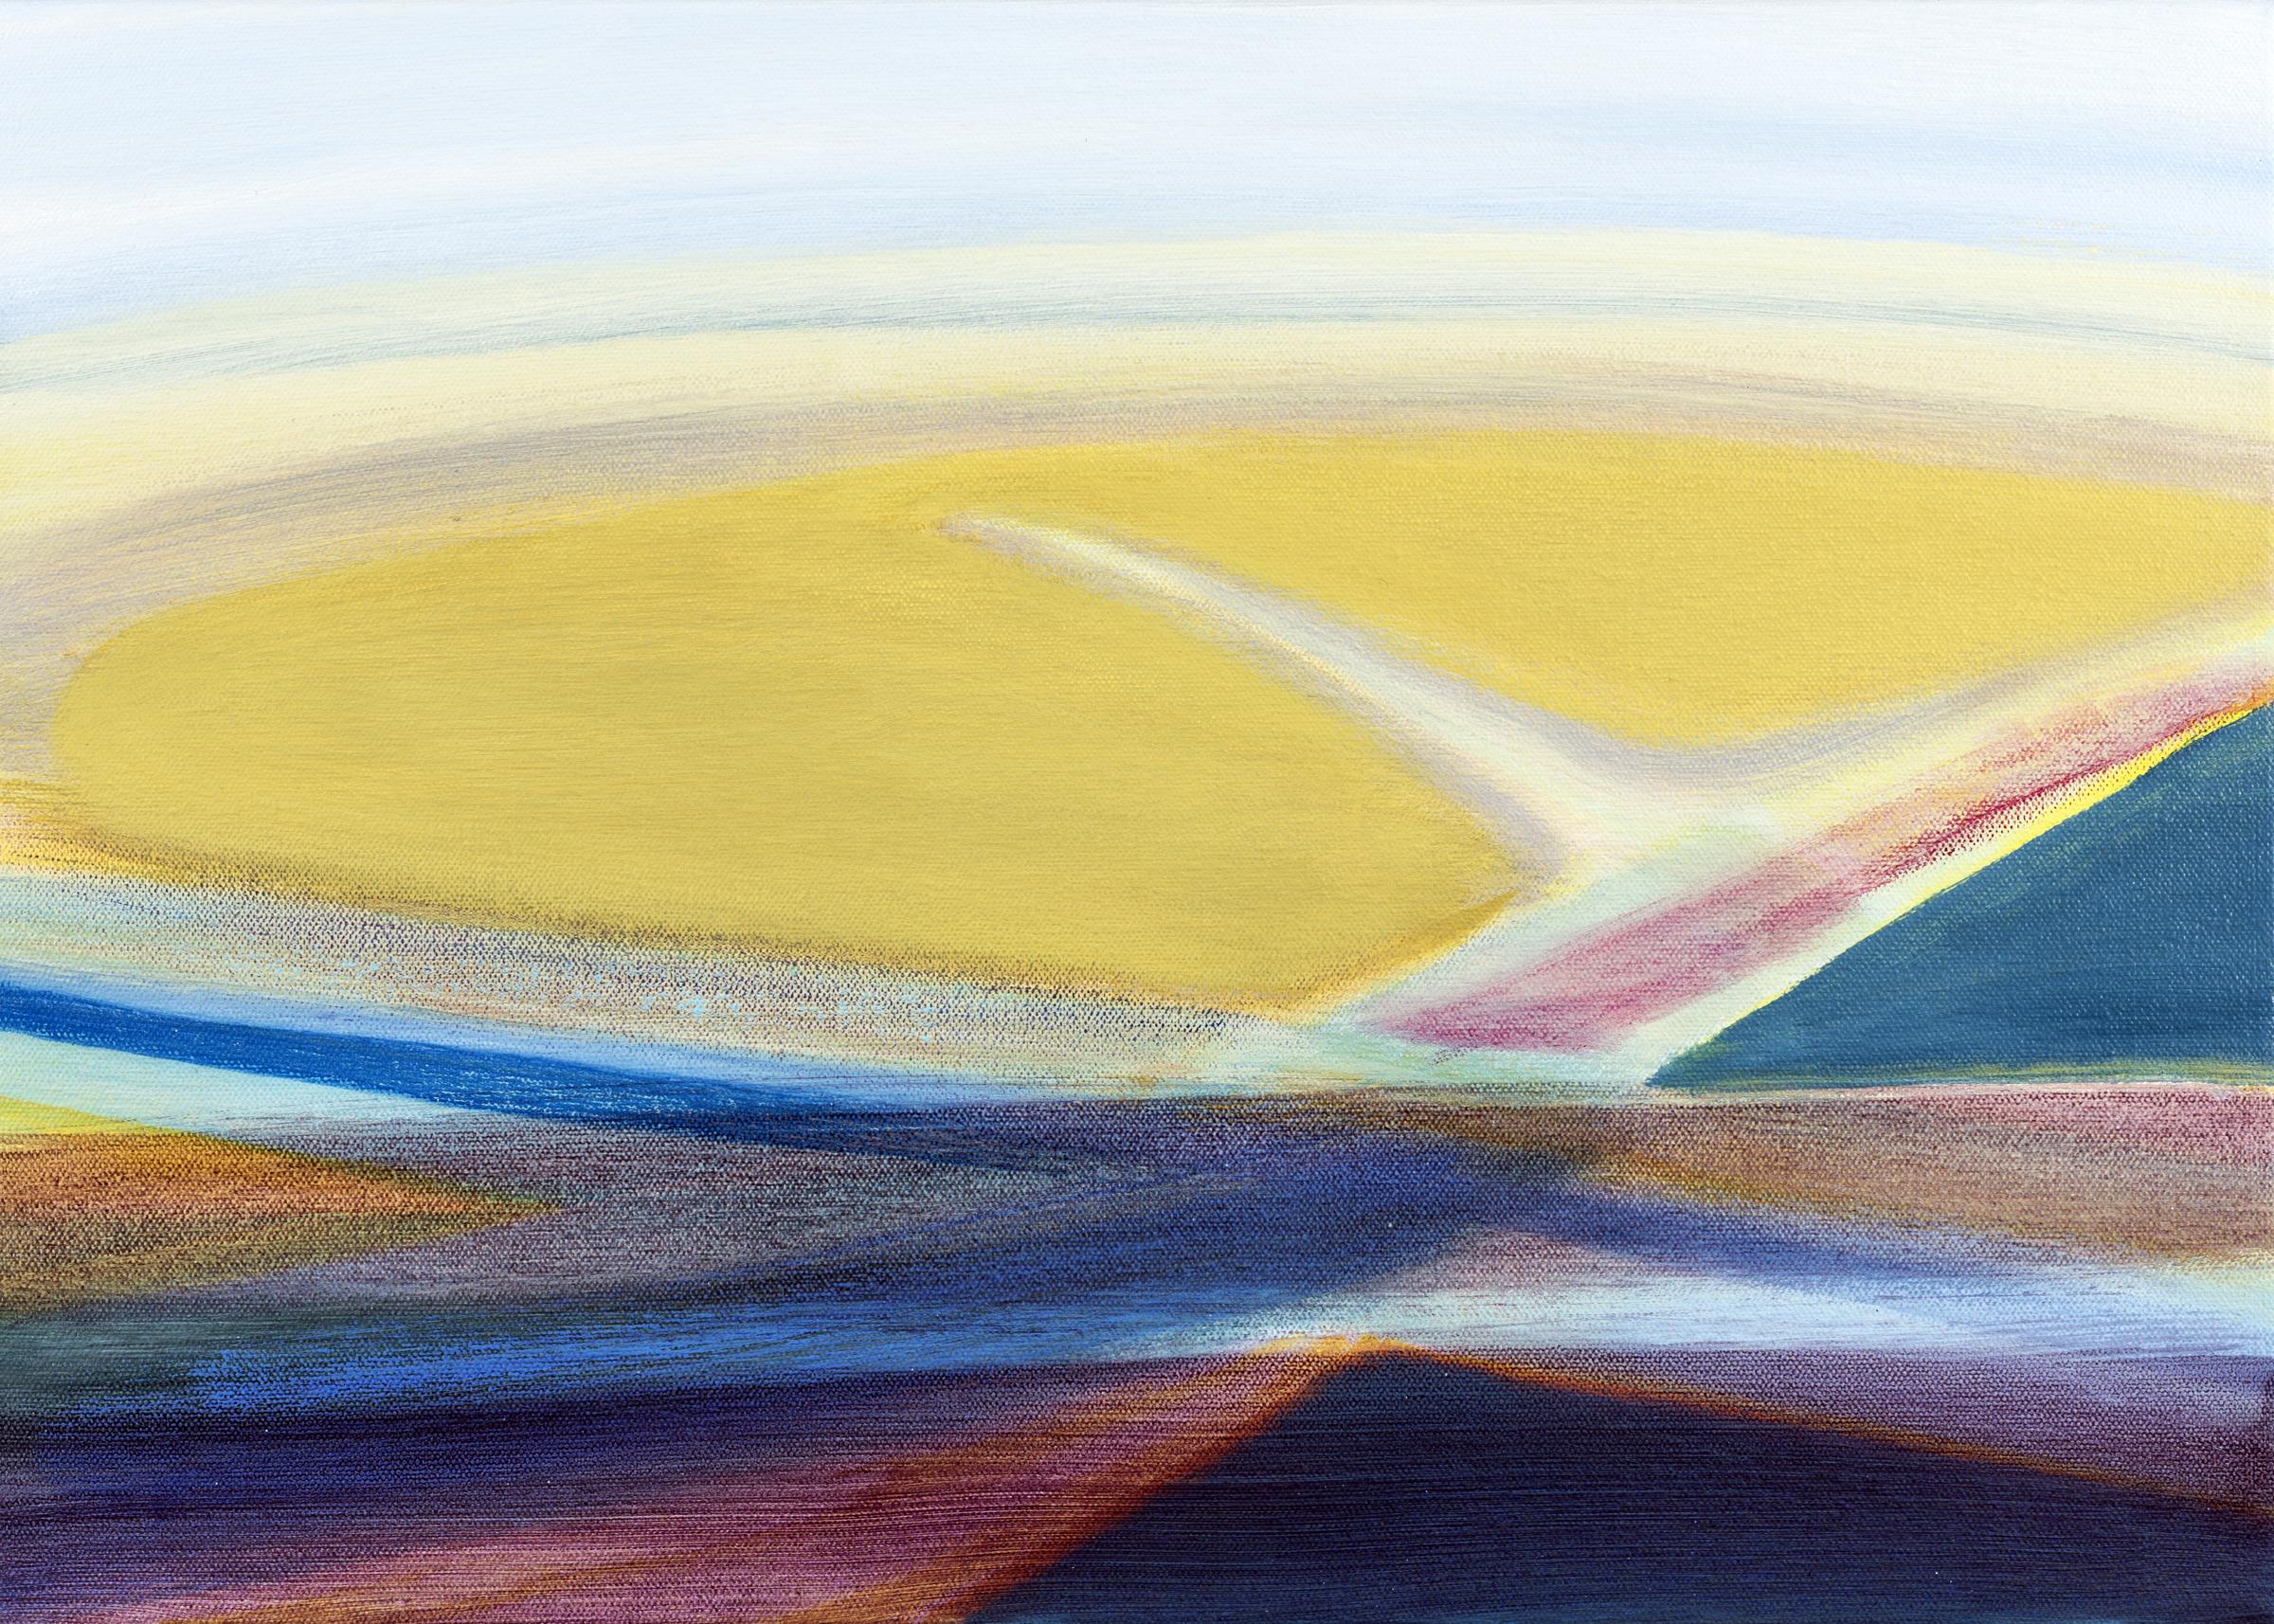 Landscape Painting Susan Maakestad - « Overview » - paysage abstrait - bloc de couleur - impressionnisme - rayures